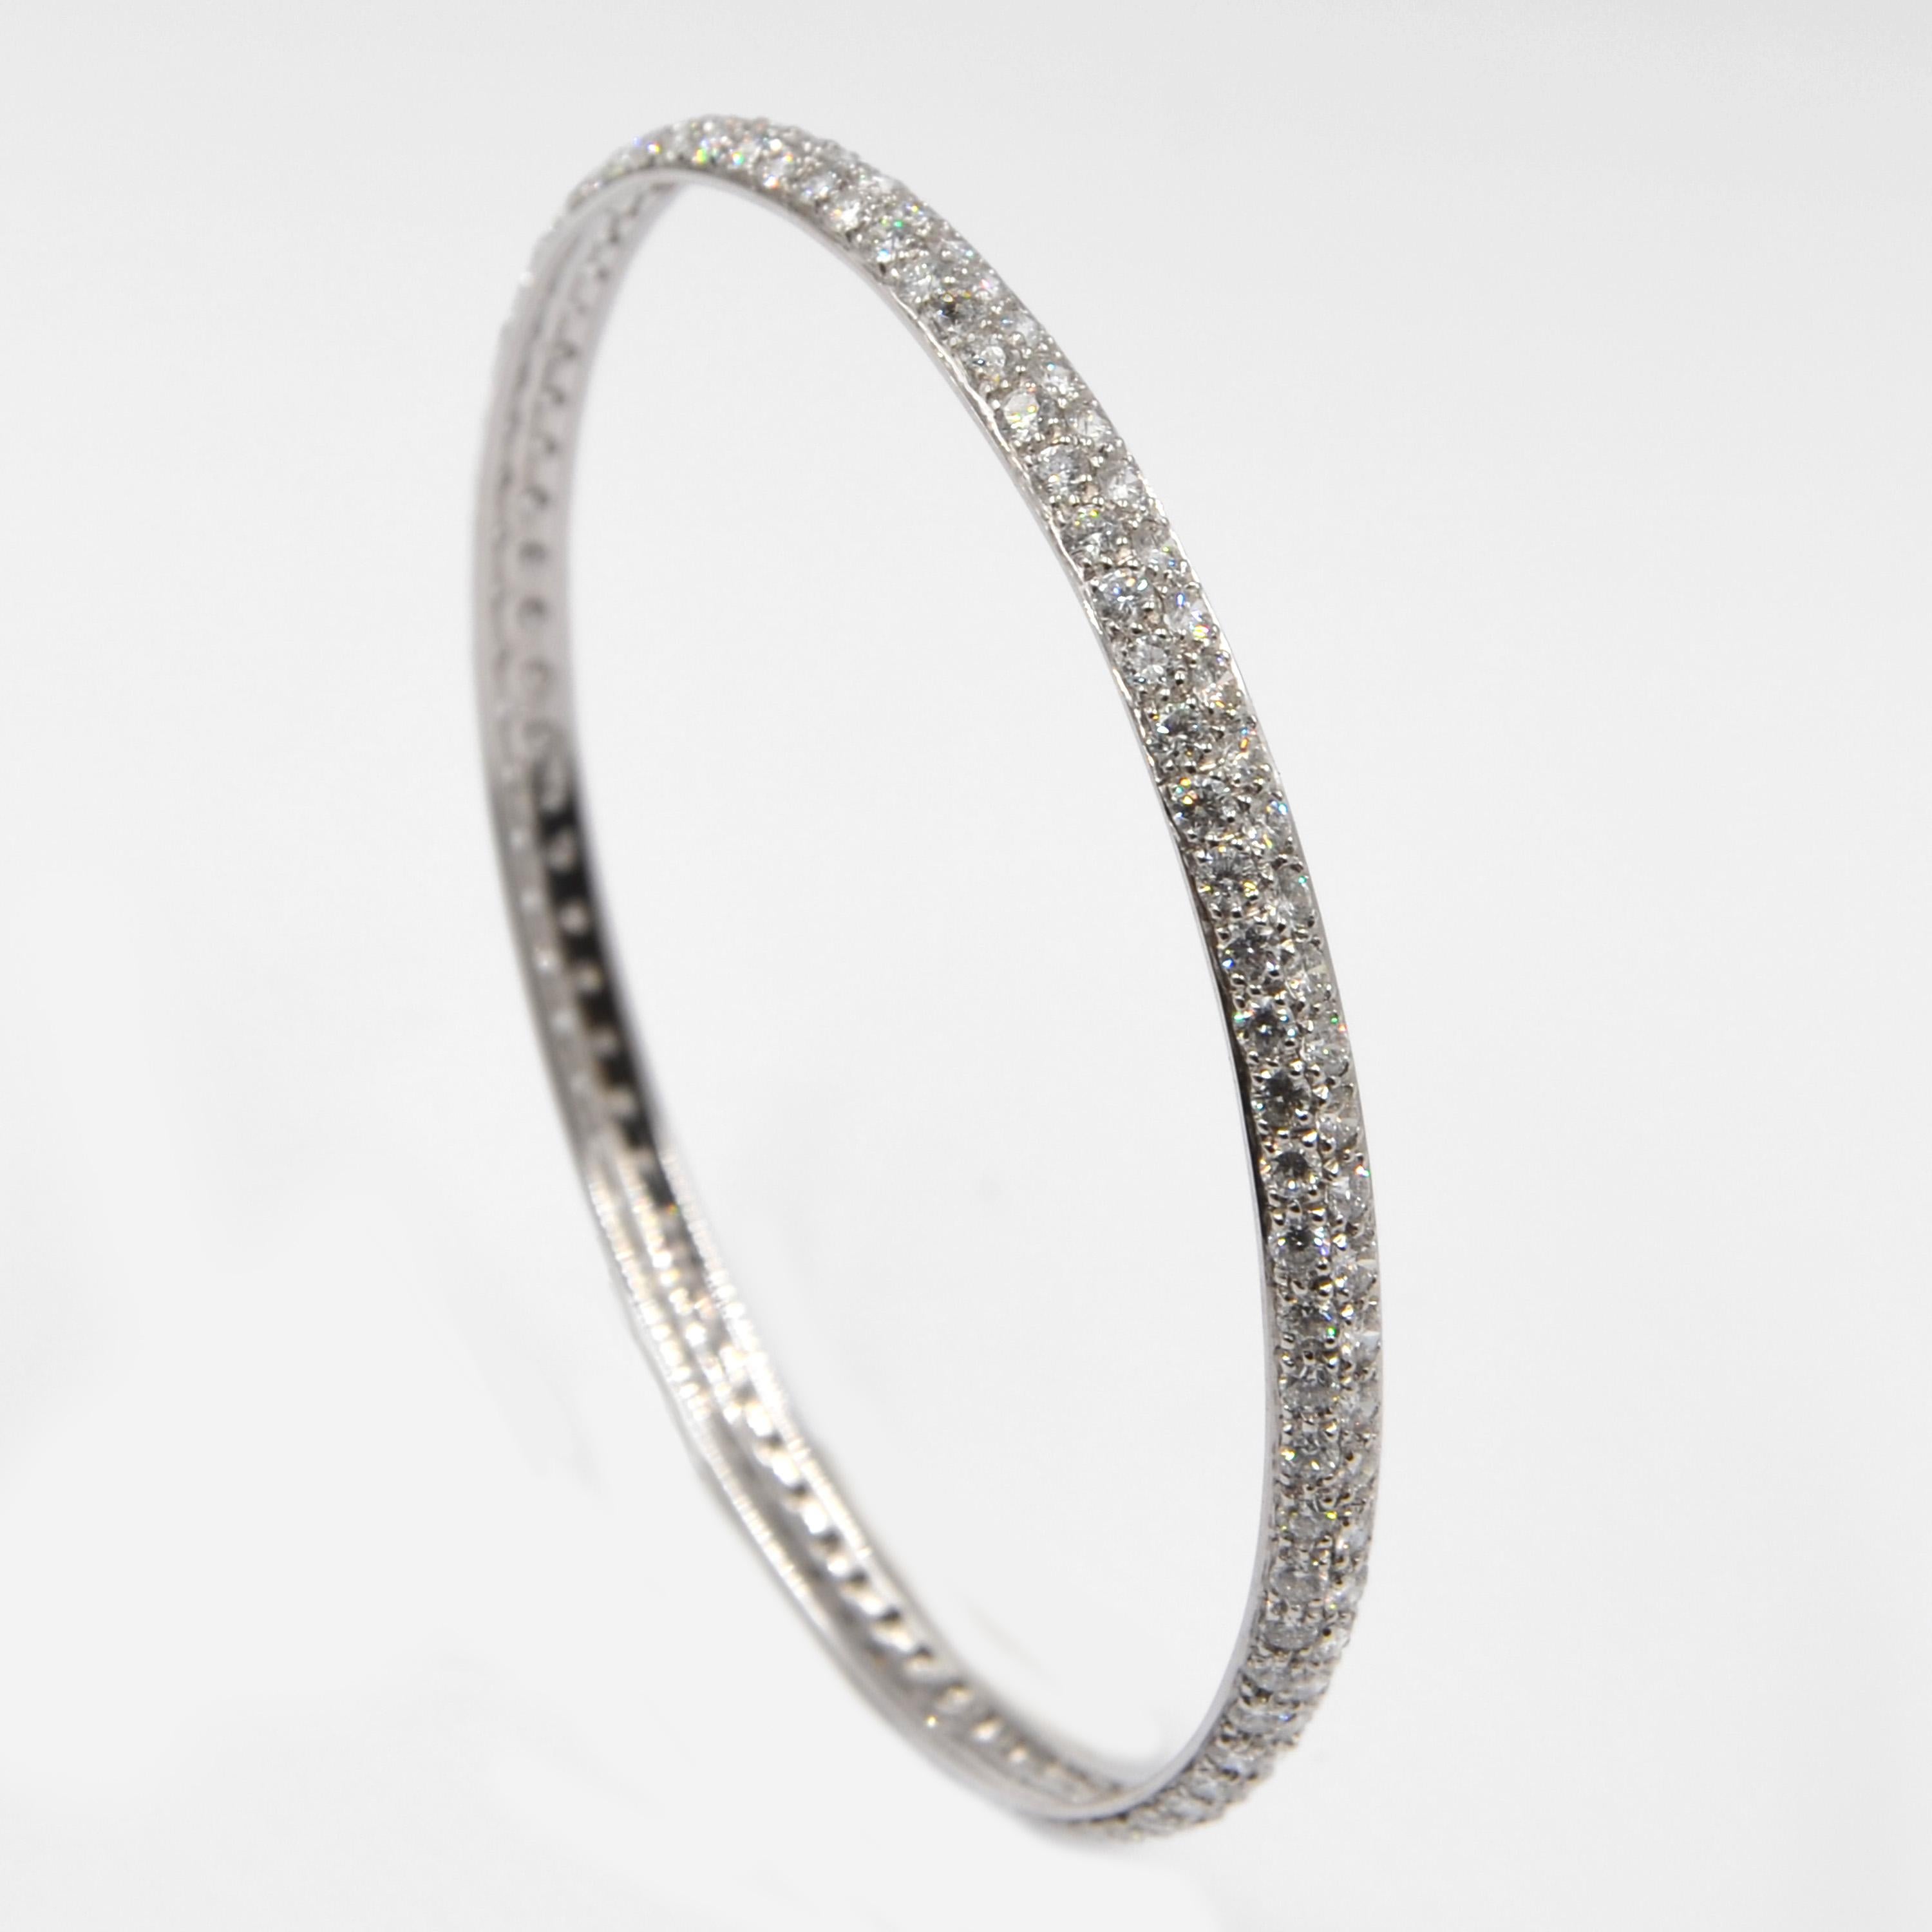 Bracelet Garavelli en or blanc 18 carats avec diamants ronds. Il est parfait pour être empilé
Bracelet à enfiler diamètre mm 65 , épaisseur mm.5
Trois rangées parfaites de diamants blancs pleine taille
Or 18 carats gr : 8.50
DIAMONDS BLANCS PAVE' ct